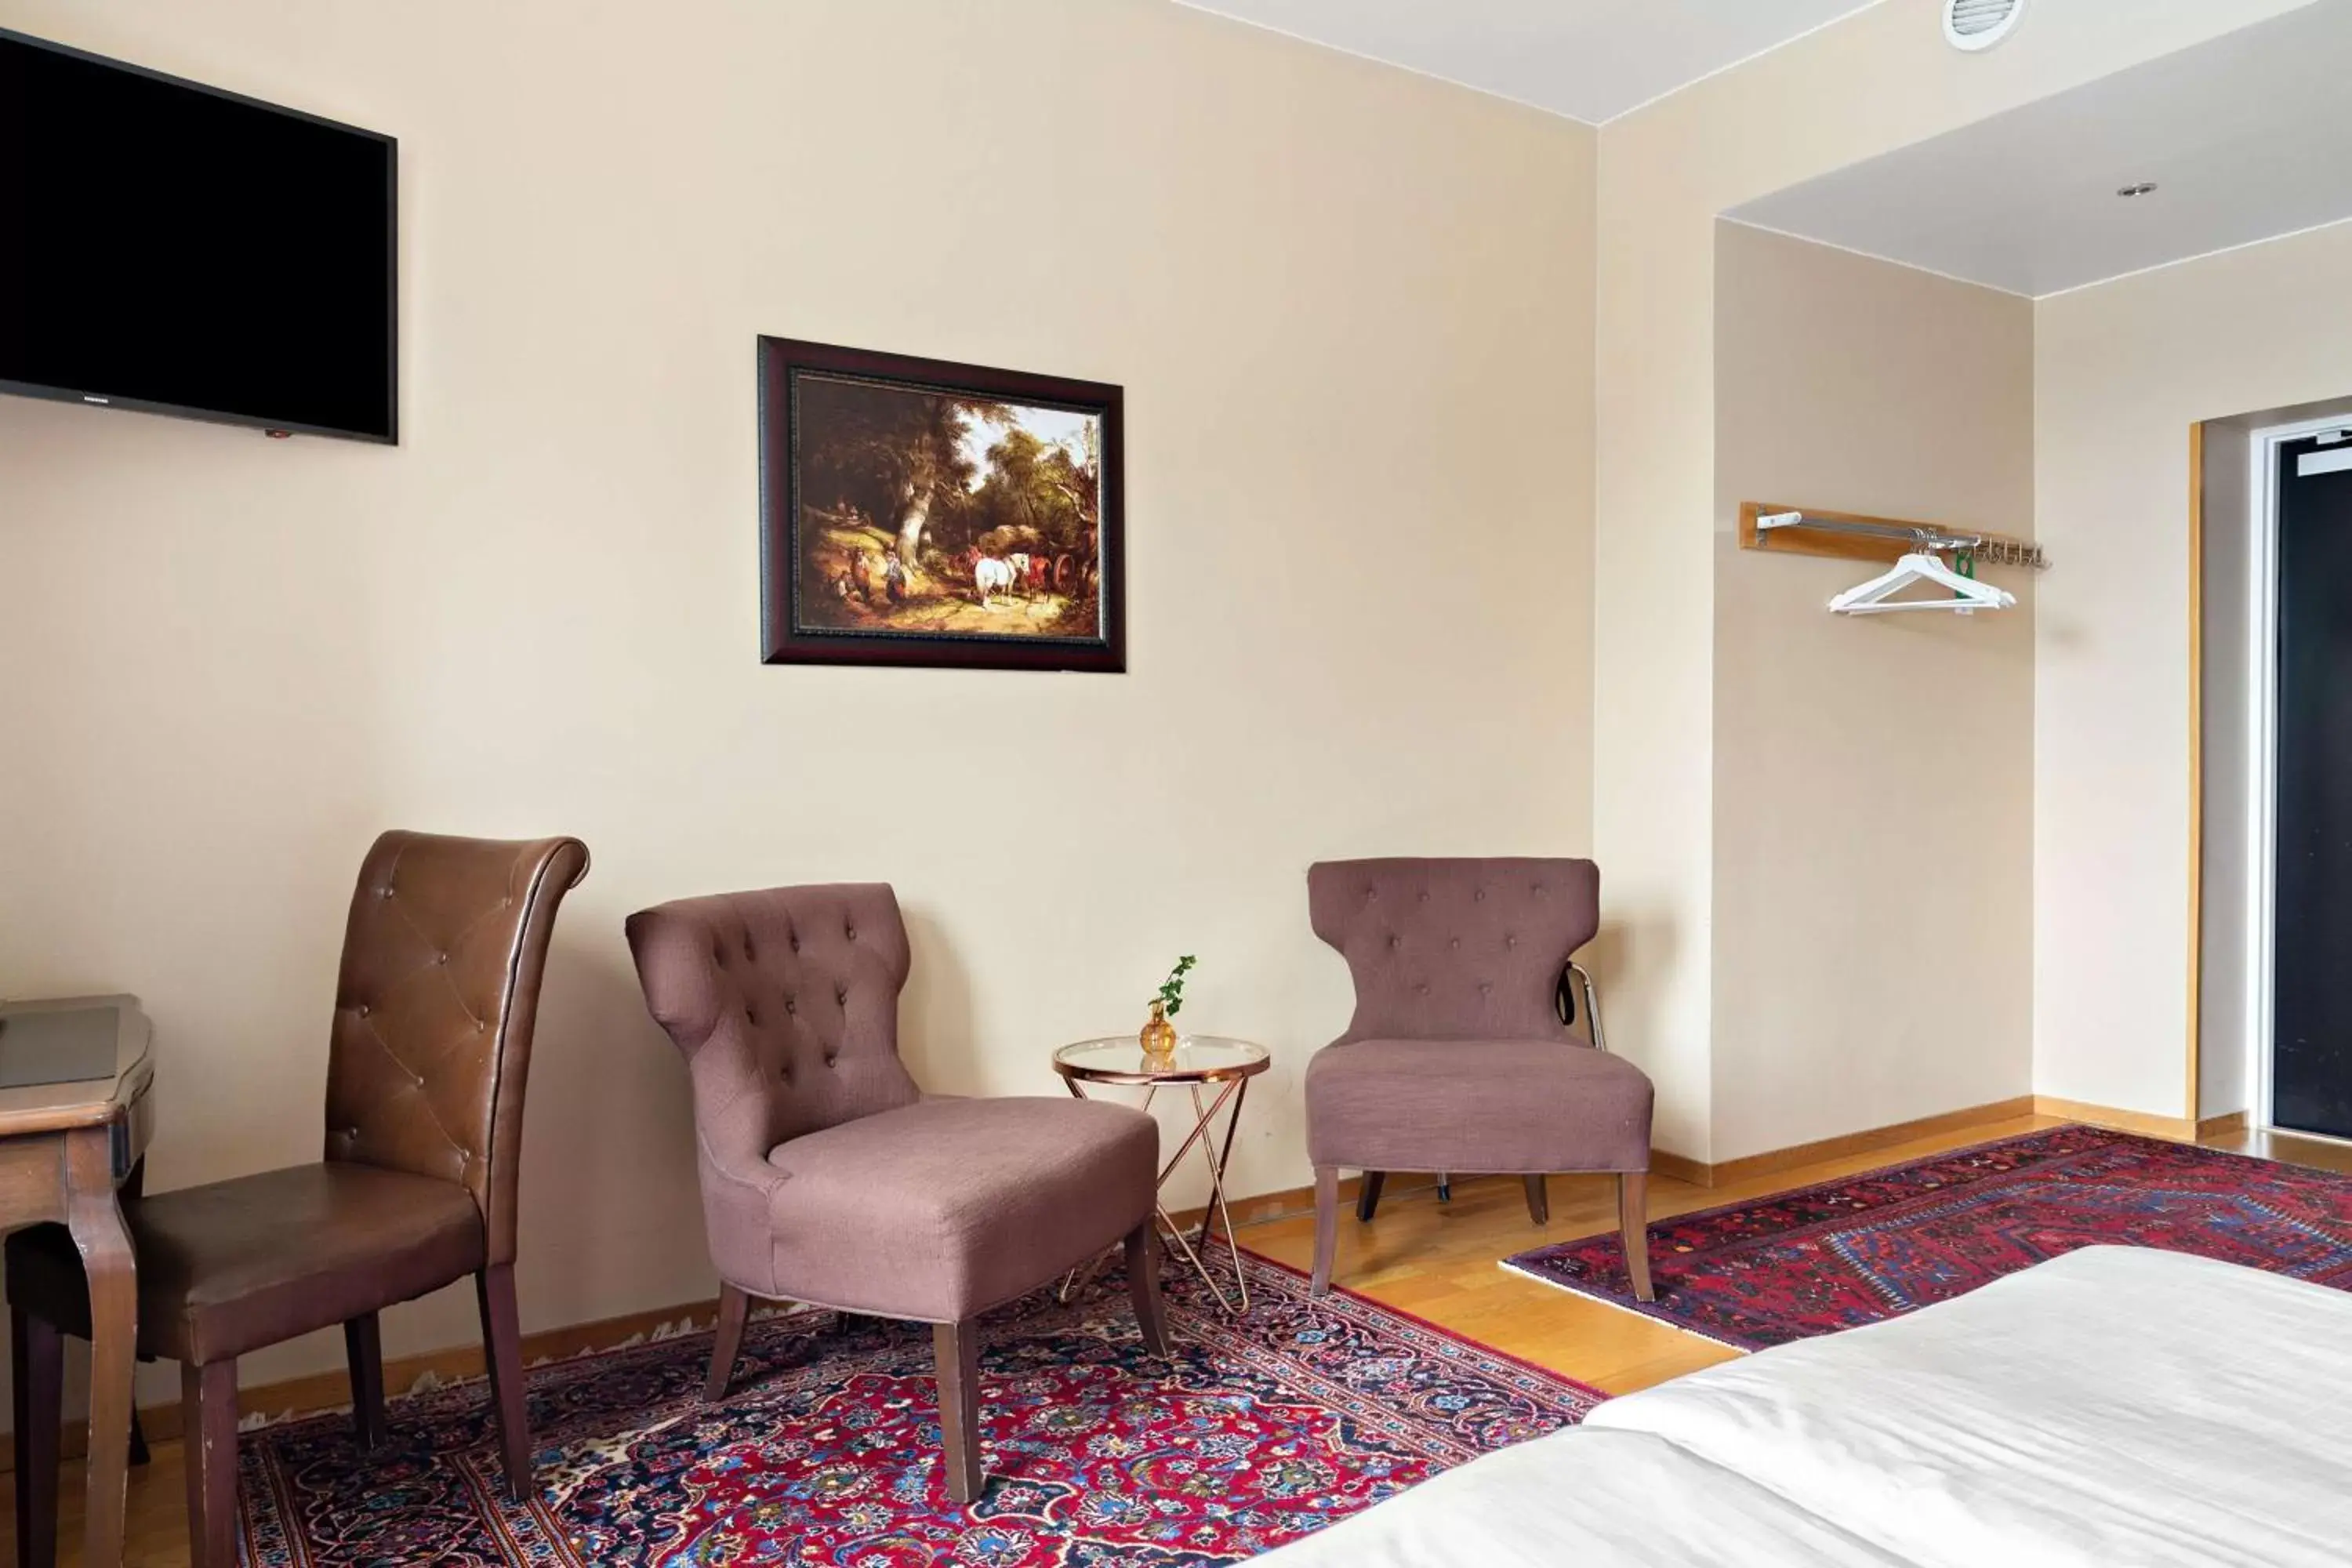 Bedroom, Seating Area in Best Western Hotel Karlaplan